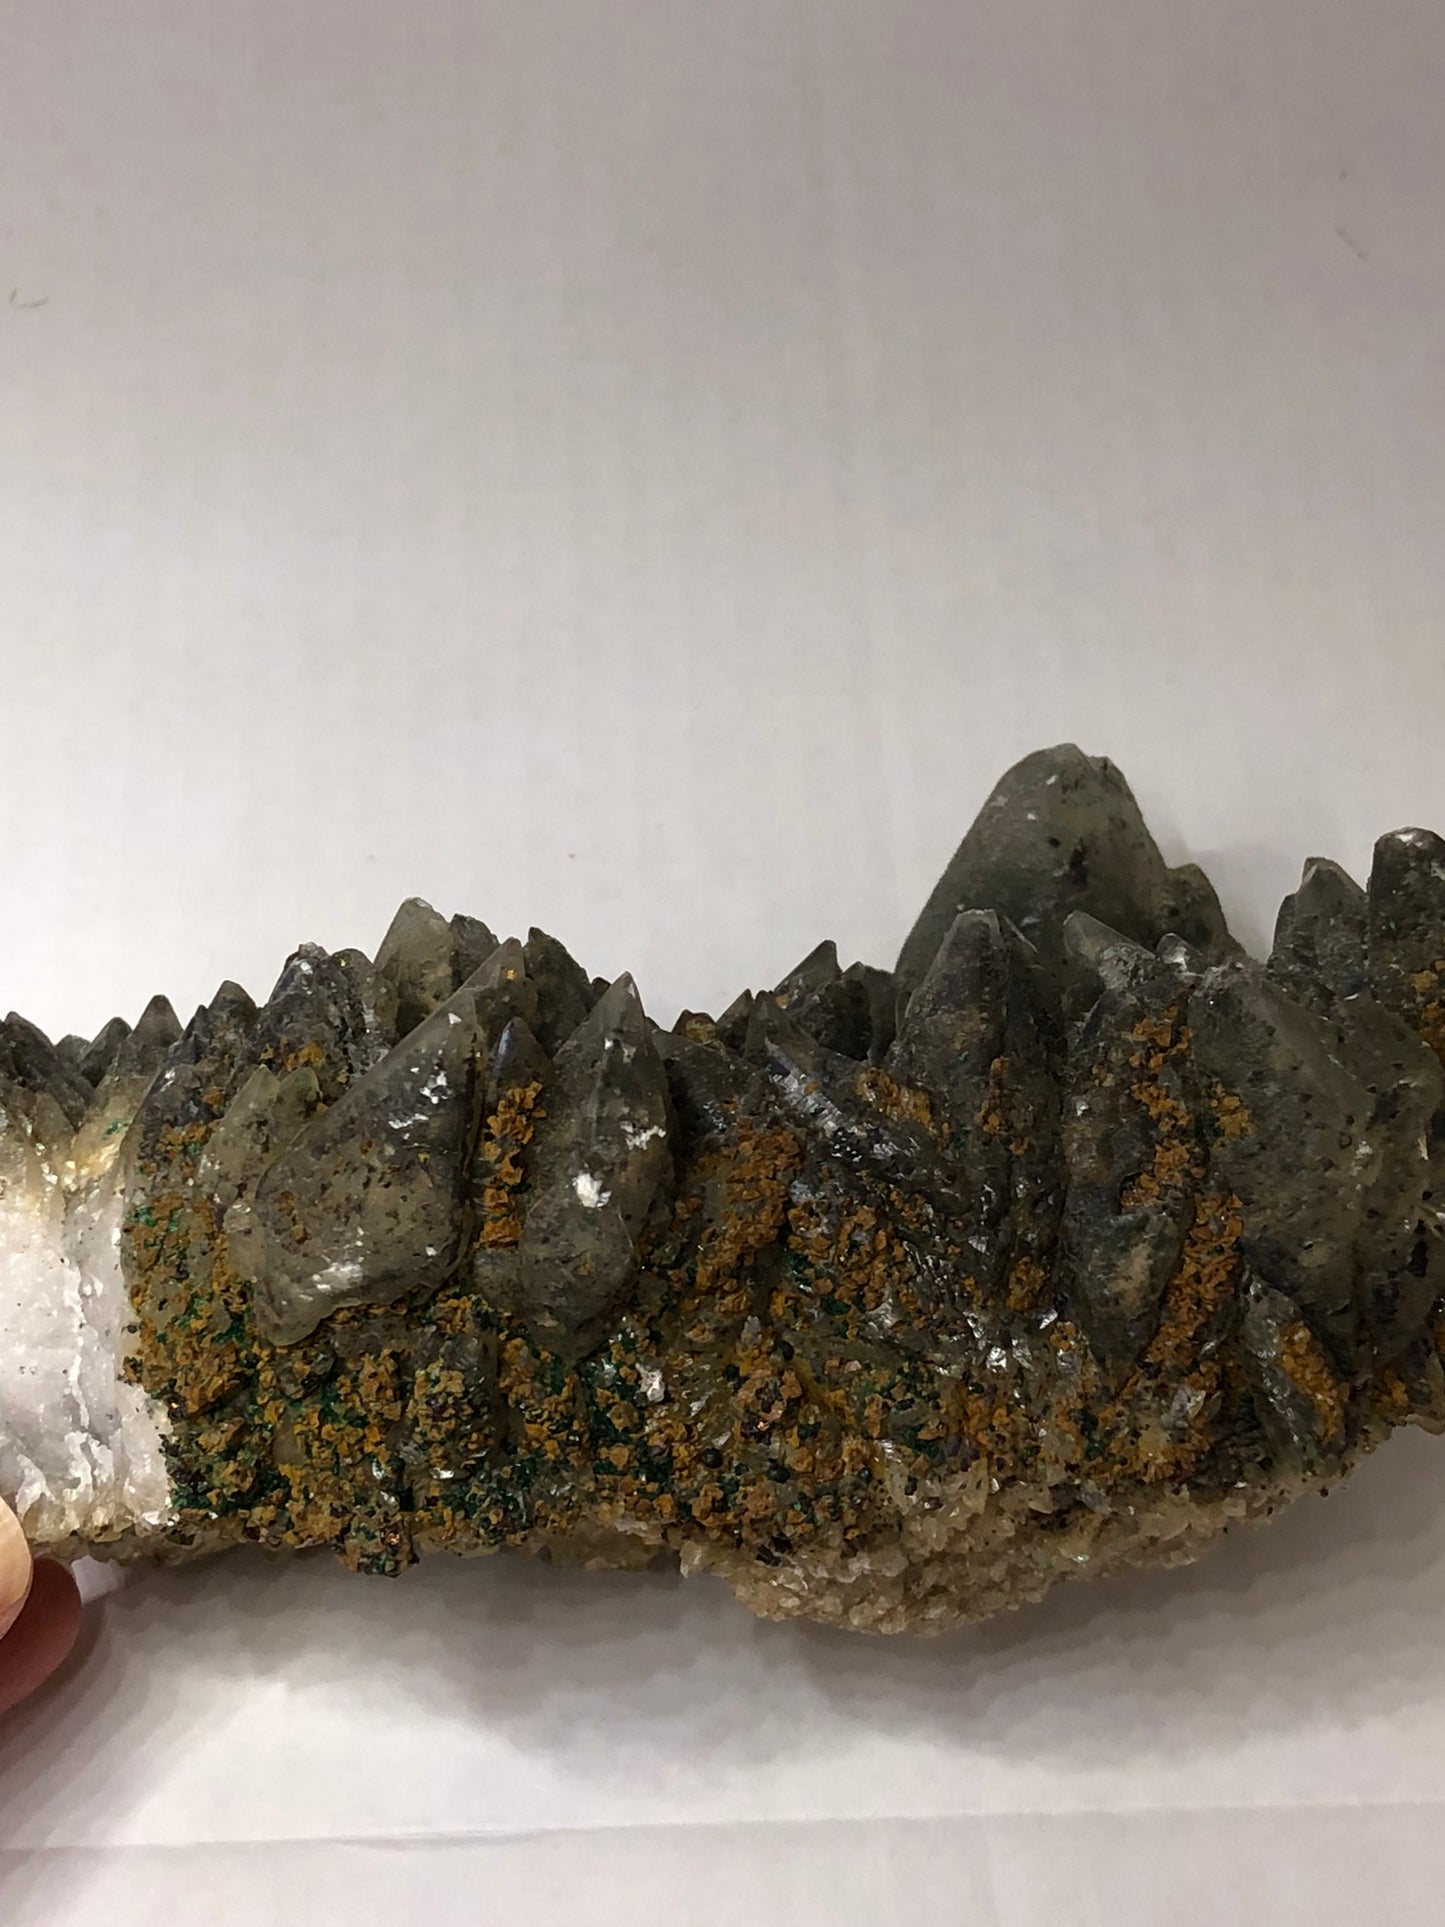 Smokey dog tooth calcite with epidote/quartz/copper